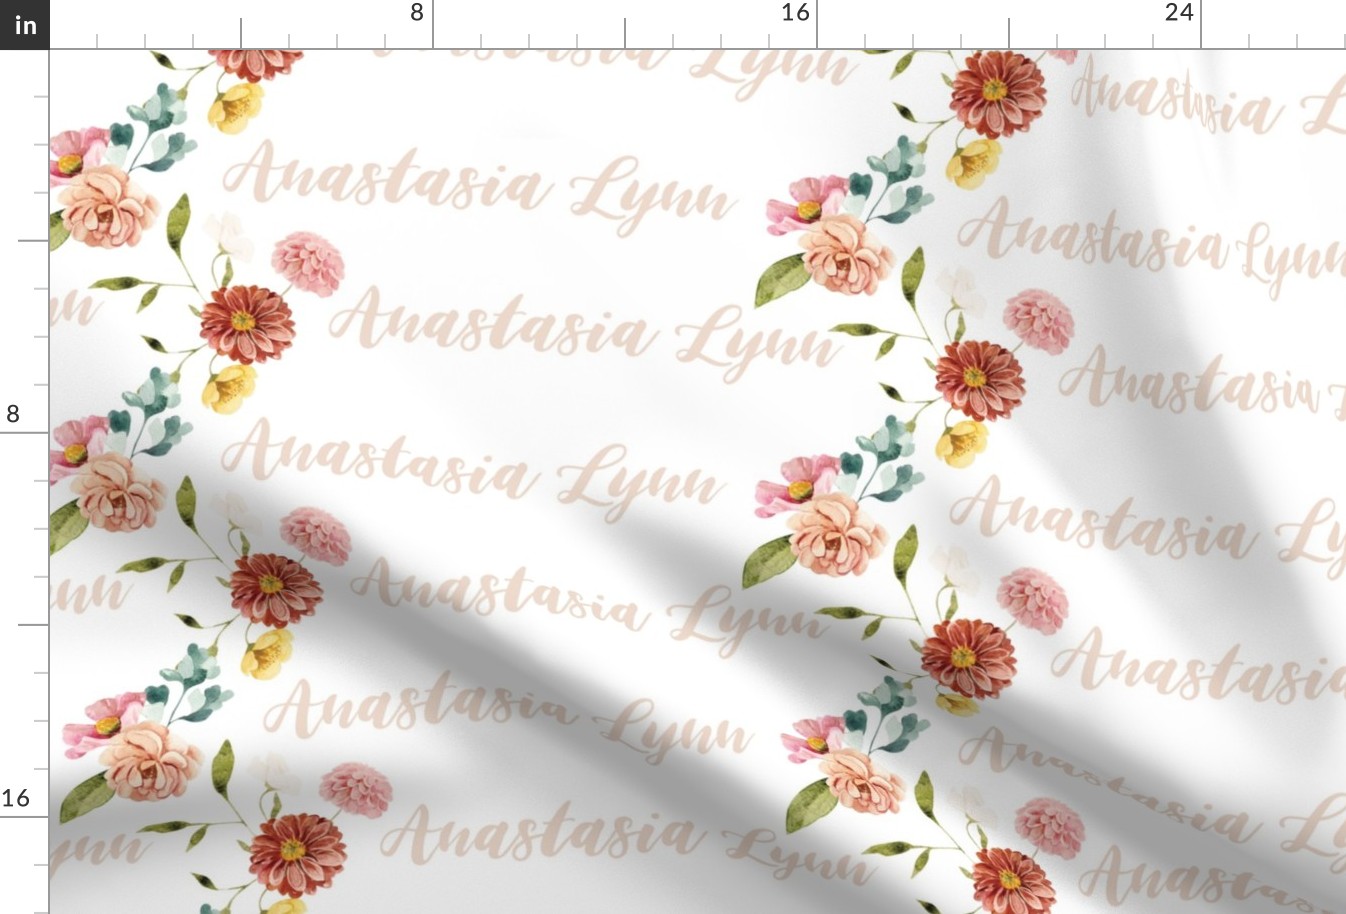 Anastasia Lynn: Handmaid Font on Fairhope Flowers